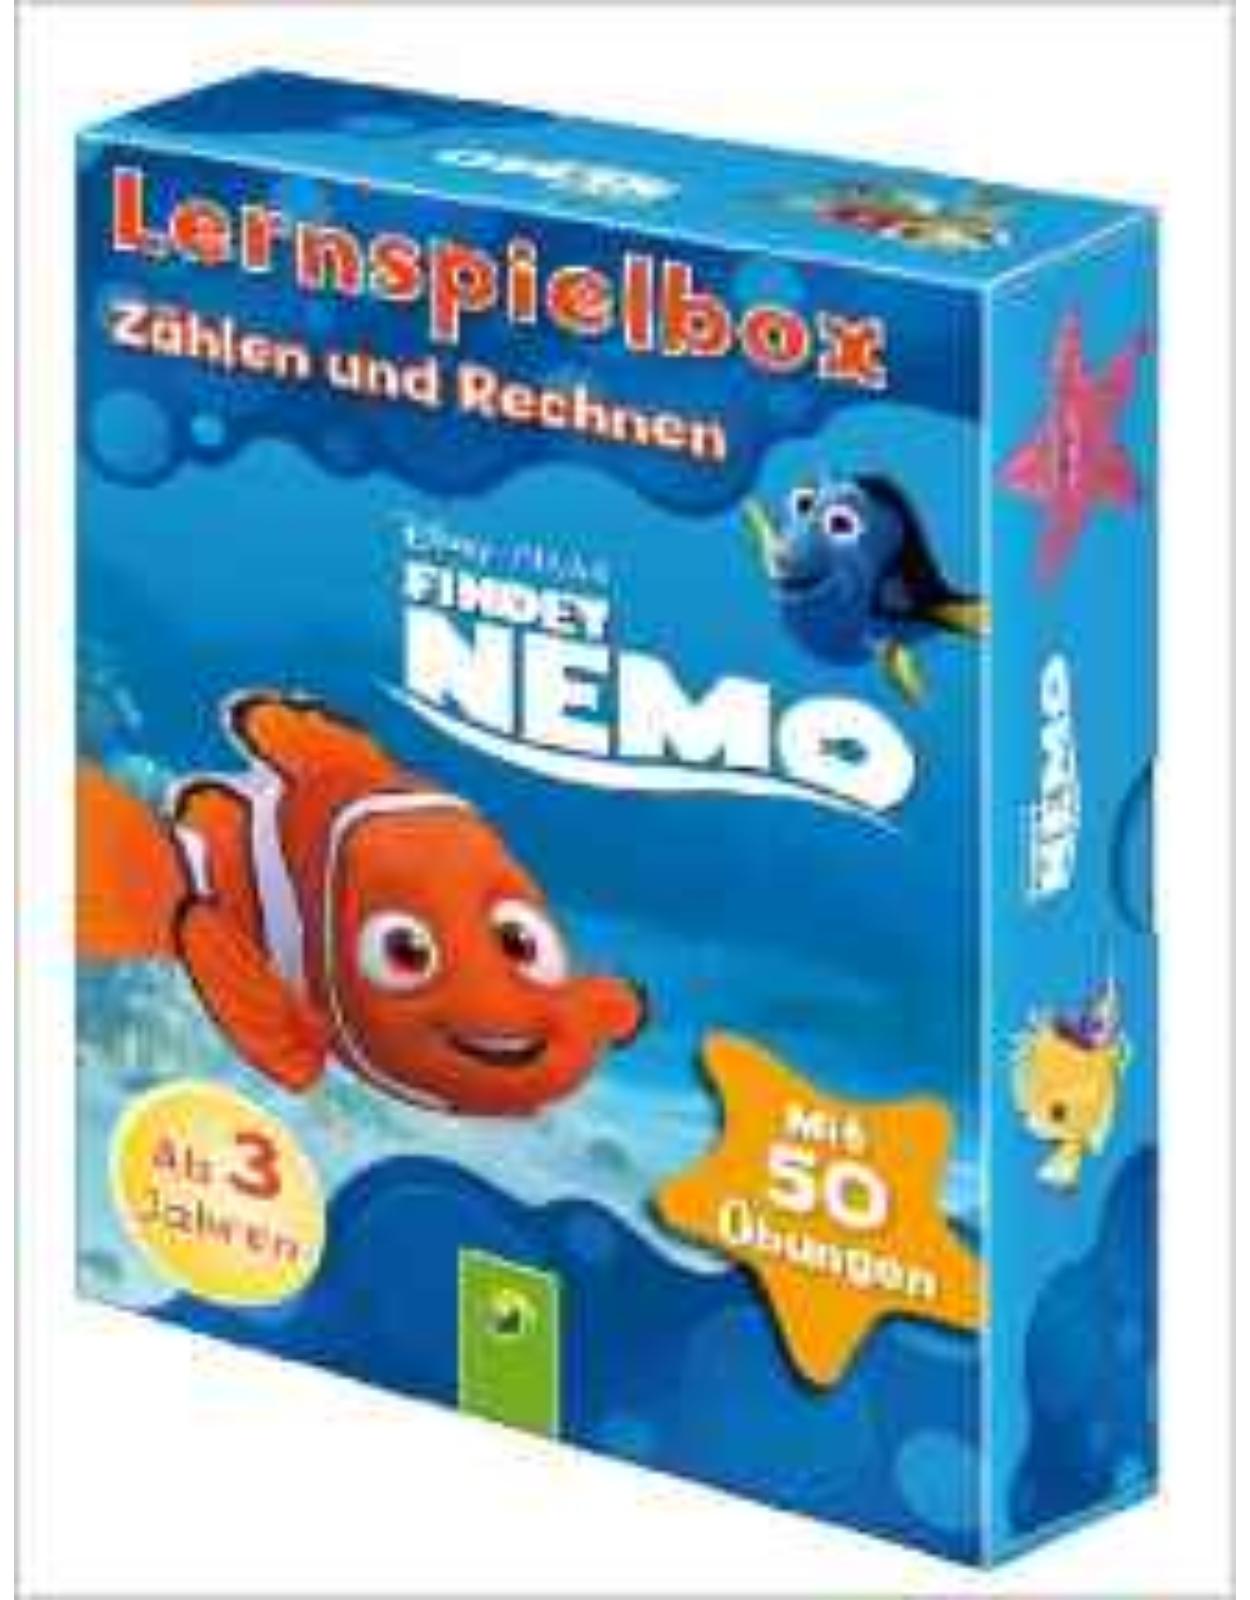 Disney Lernspielbox - Findet Nemo: Zählen und Rechnen: Mit 50 Übungen